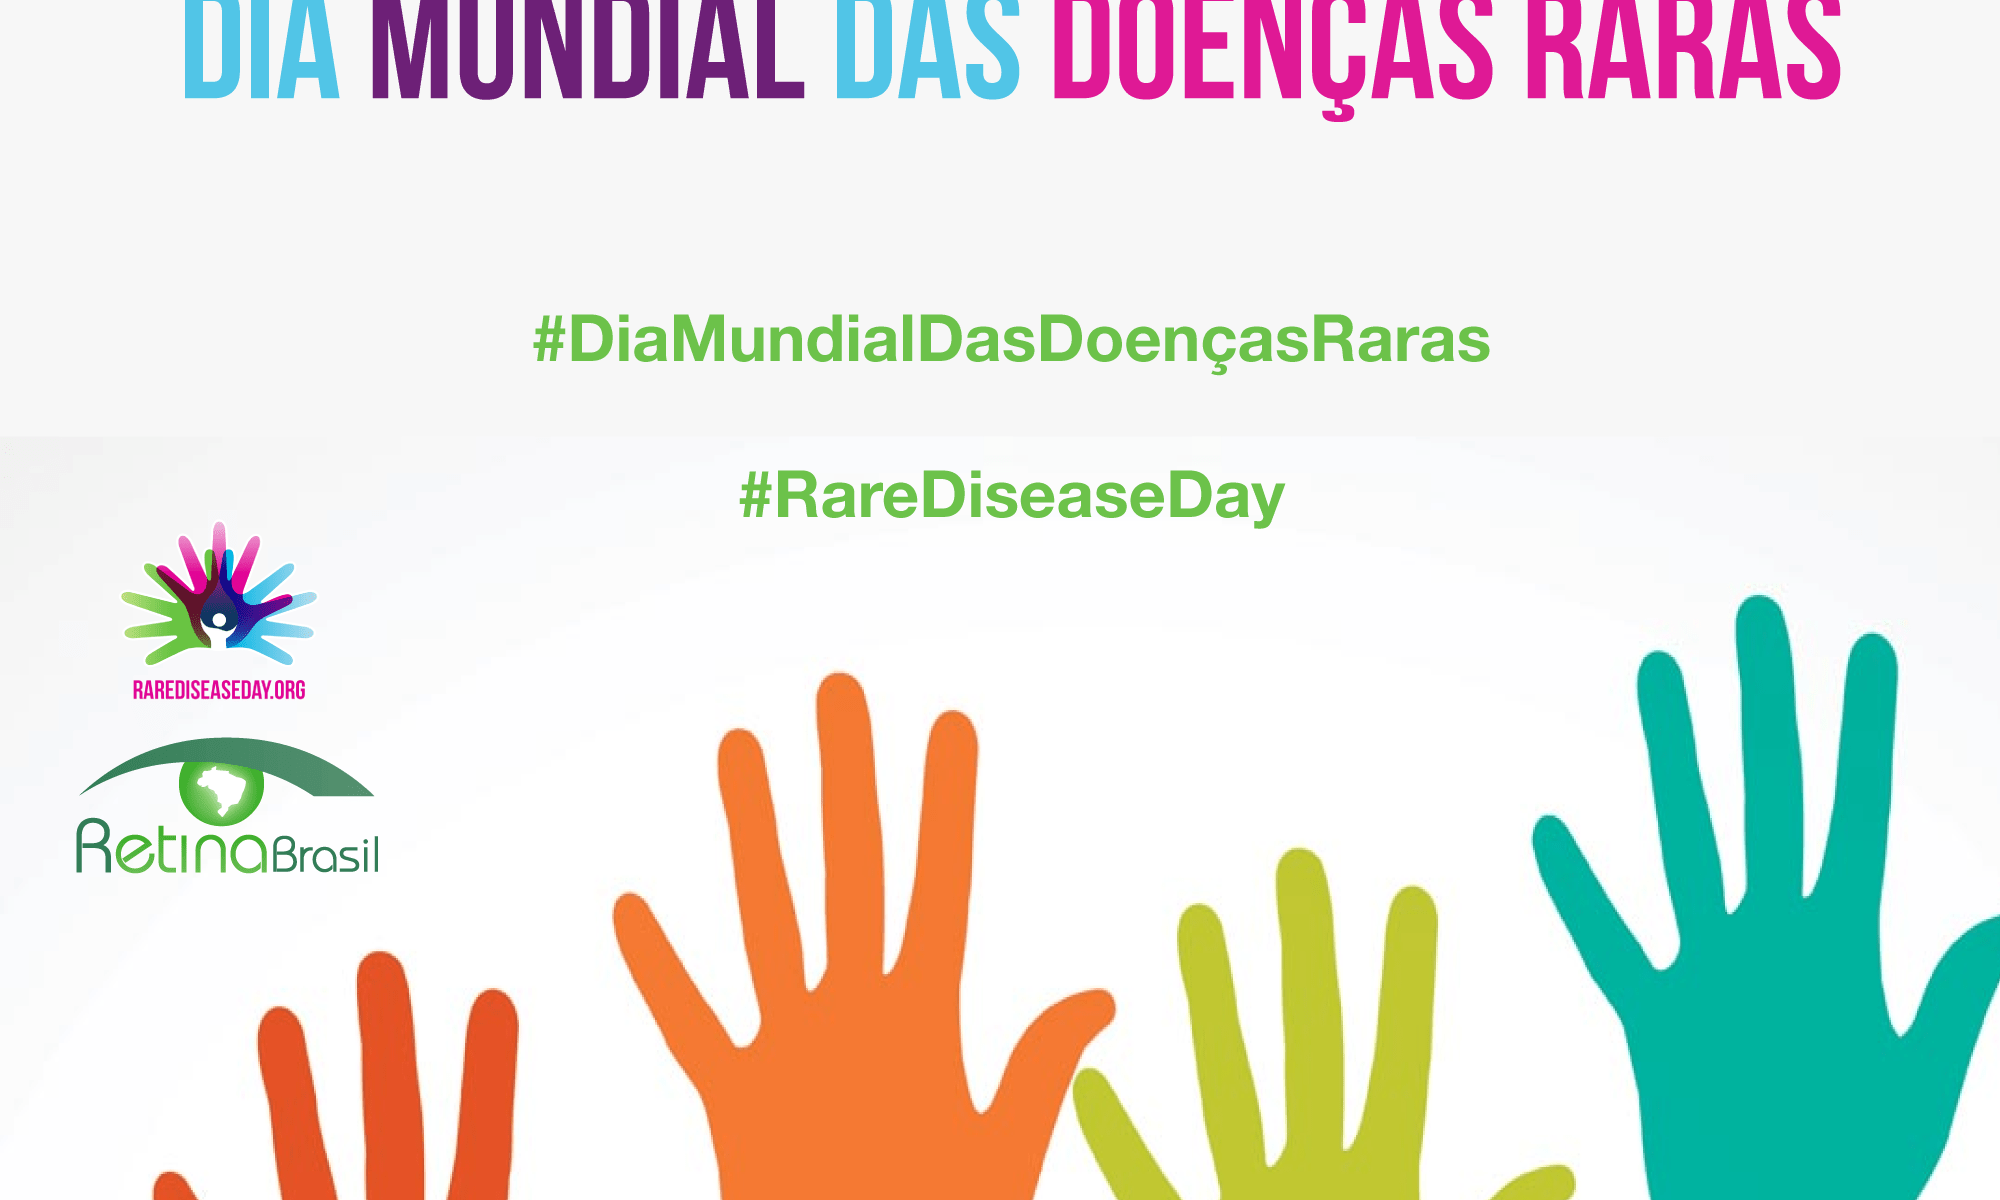 #PraCegoVer imagem ilustrativa. Há desenhos de mãos para o alto e está escrito: 29 de fevereiro Dia Mundial das Doenças Raras há ainda as logos do #RareDiseaseDay e da Retina Brasil #DiaMundialDasDoençasRaras